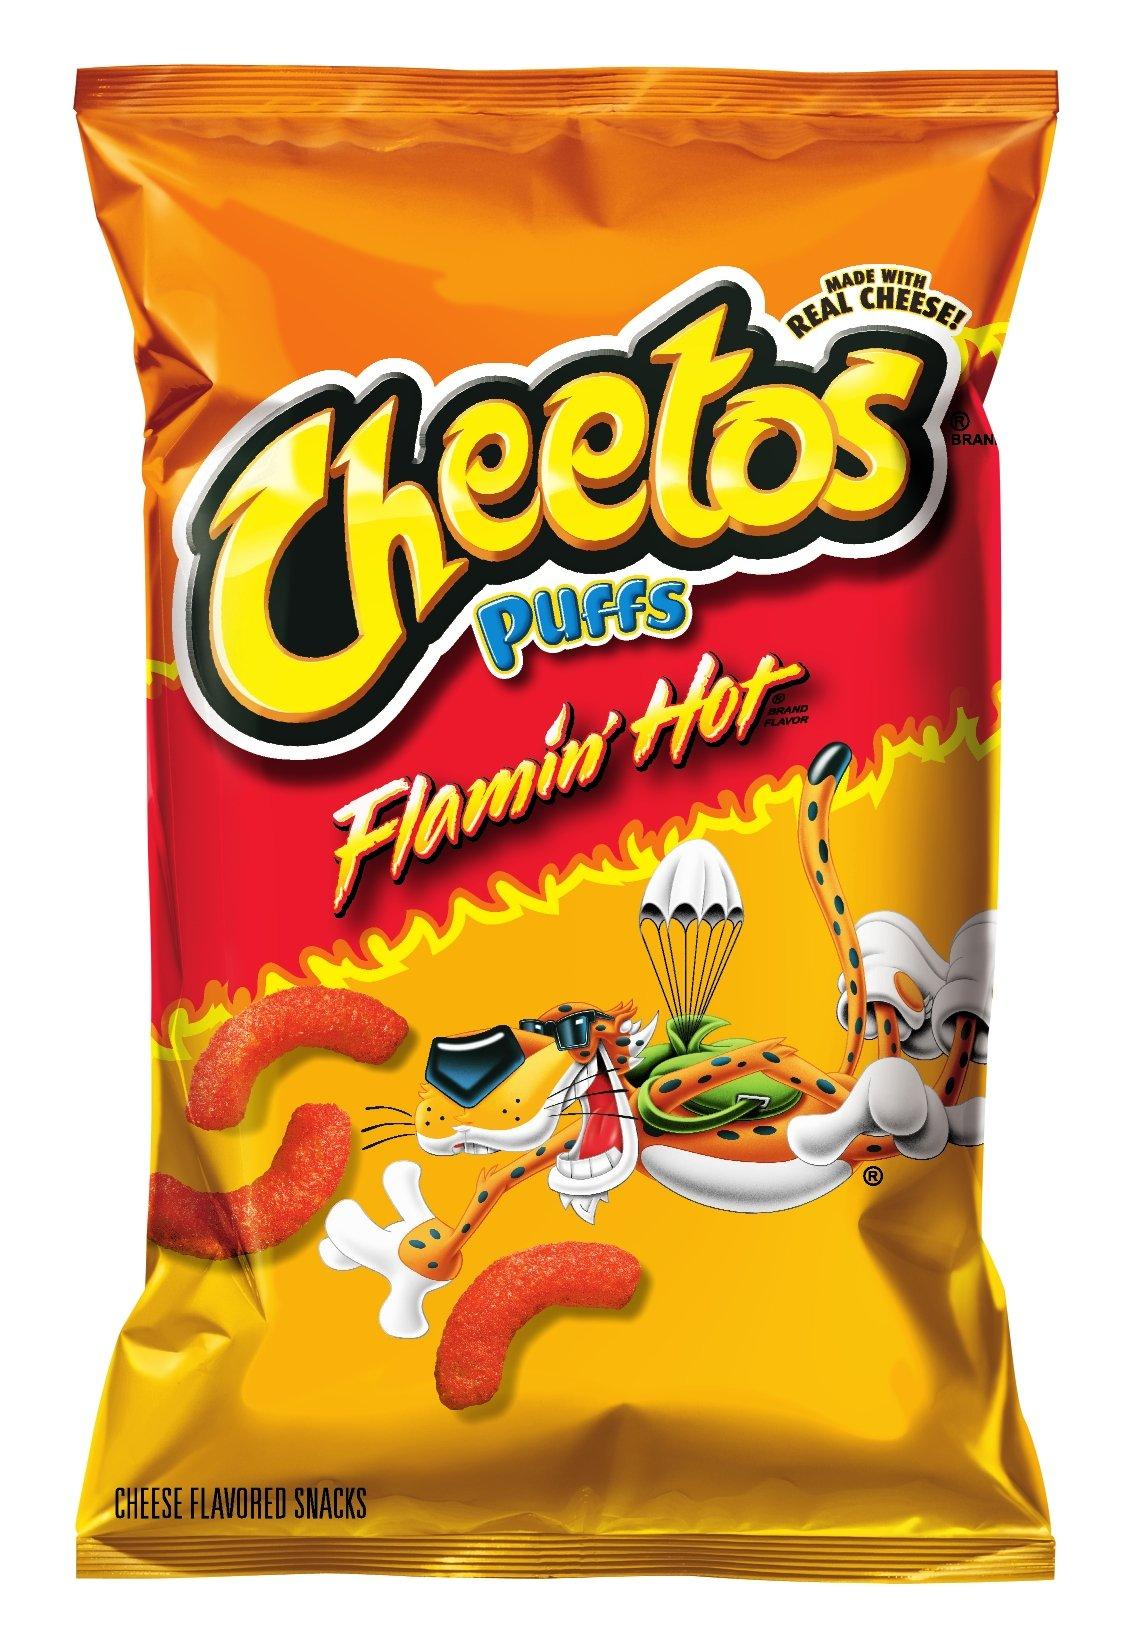 Cheetos Cheese Snacks, Jumbo Puffs, Flaming Hot, 2.25